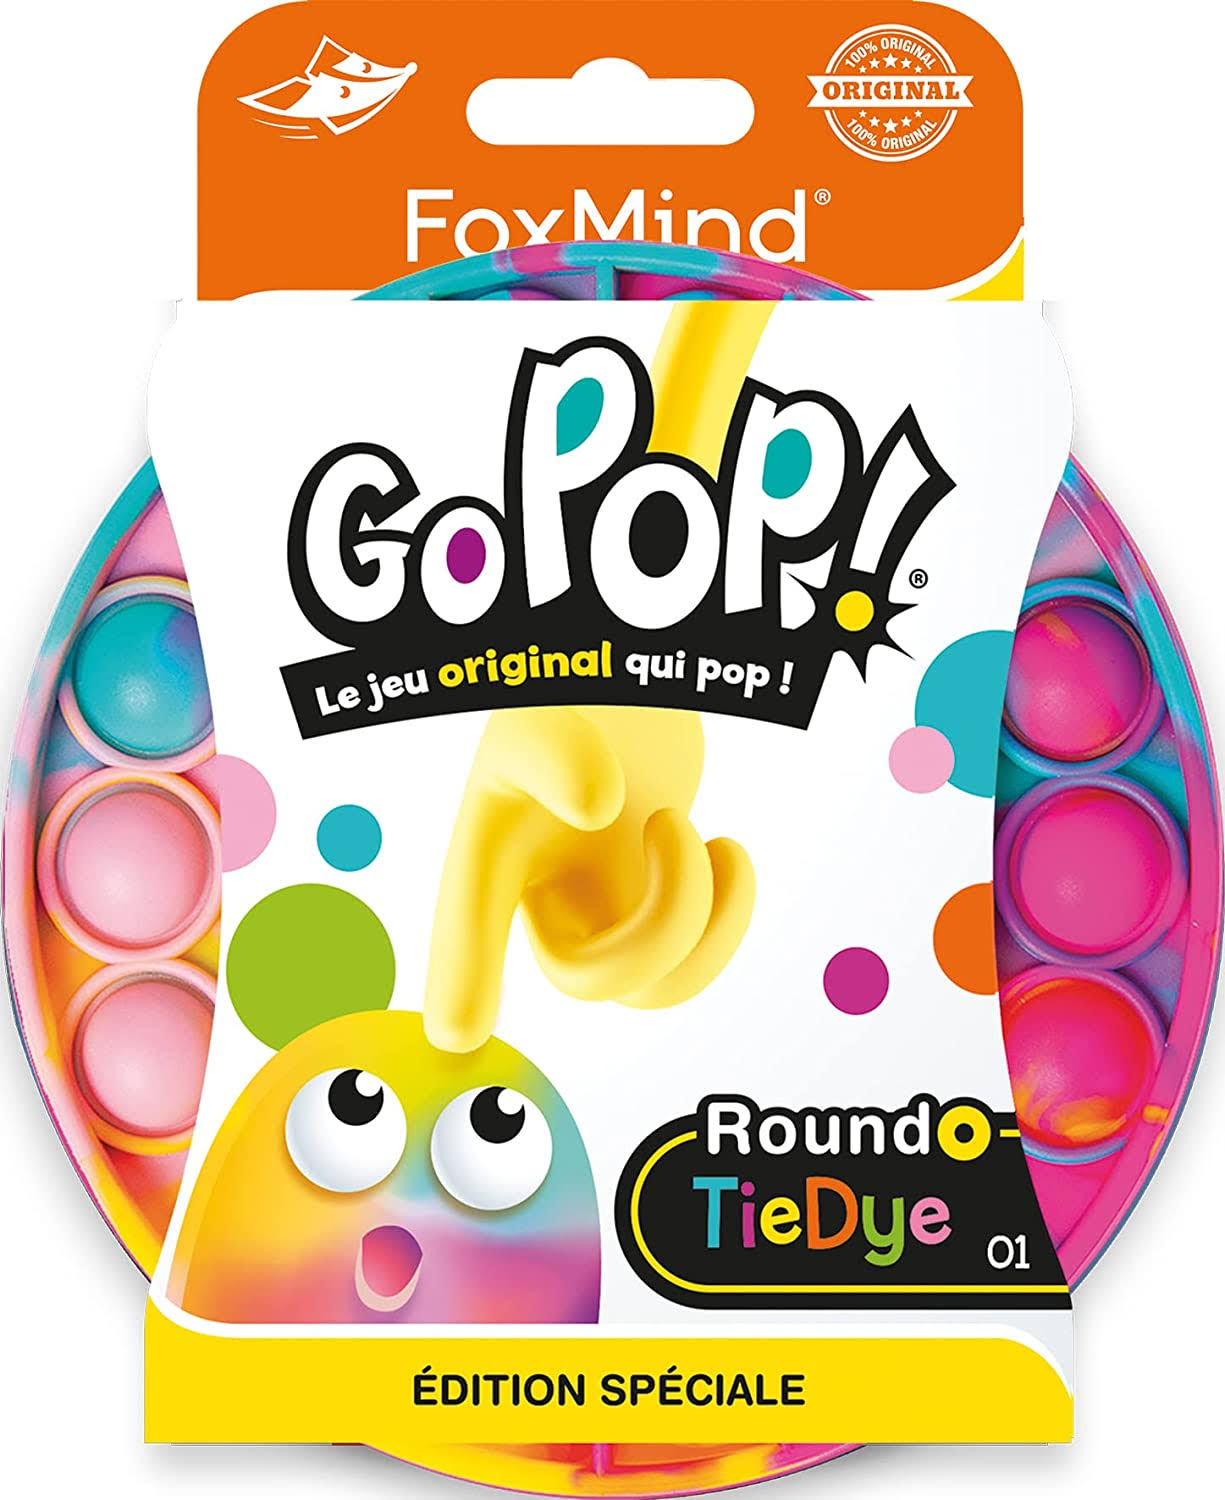 Foxmind Go Pop Tie Dye